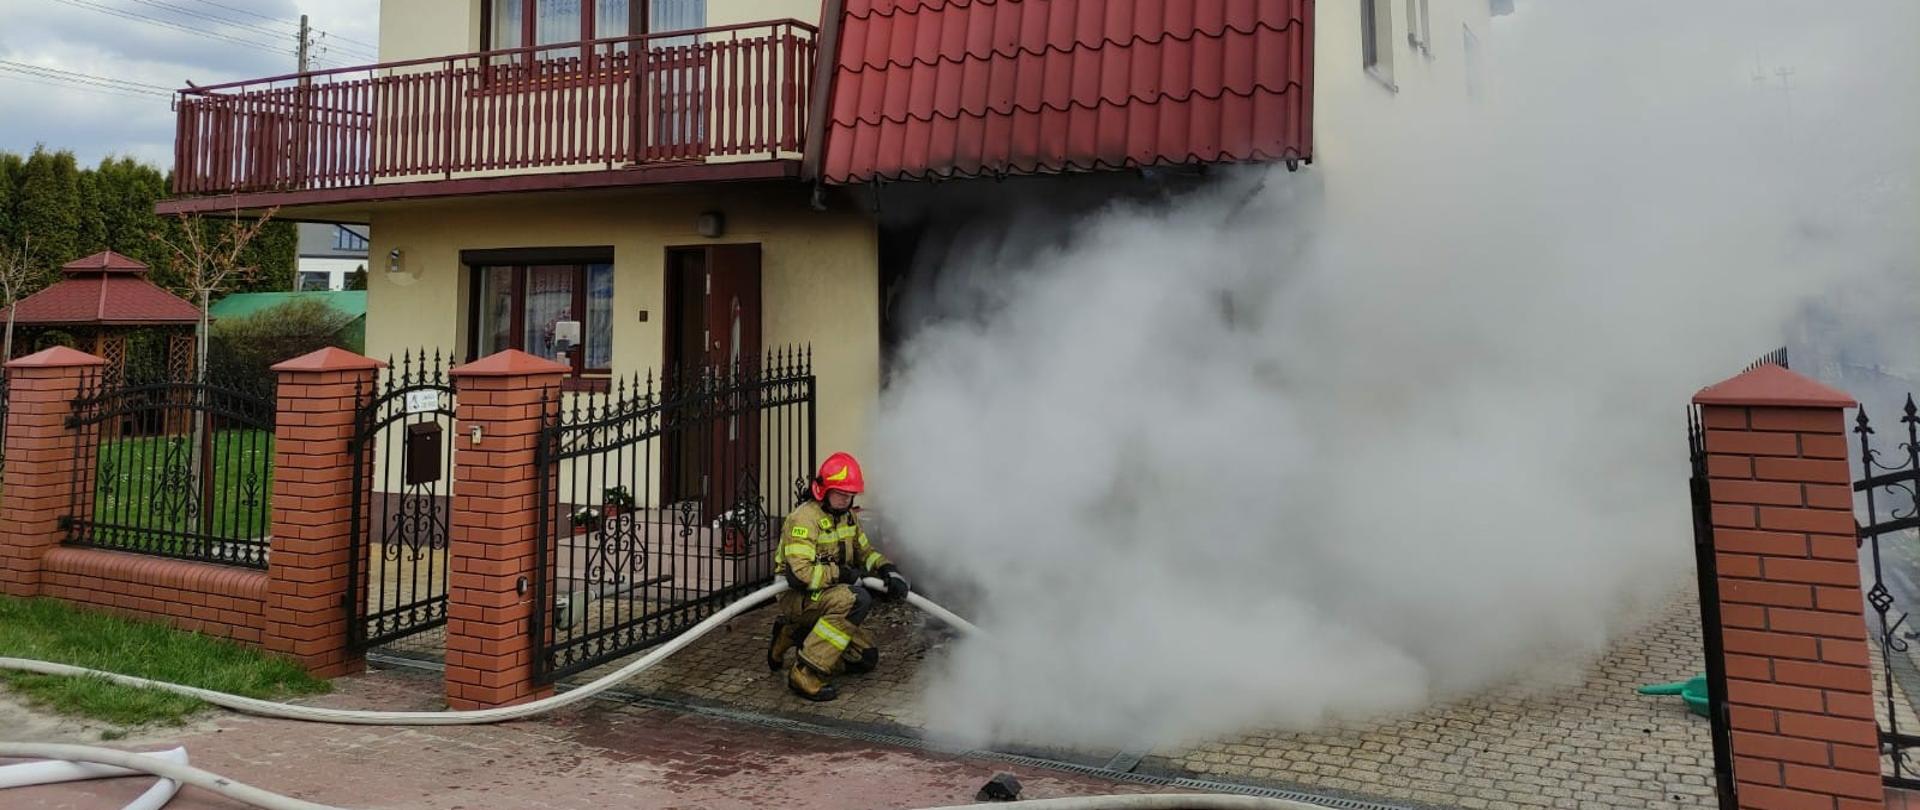 Budynek mieszkalny jednorodzinny, z garażu wydobywa się dym, w linii ogrodzenia kuca strażak ubrany w ubranie specjalne i sprzęt ochrony układu oddechowego, w rękach trzyma linię wężową